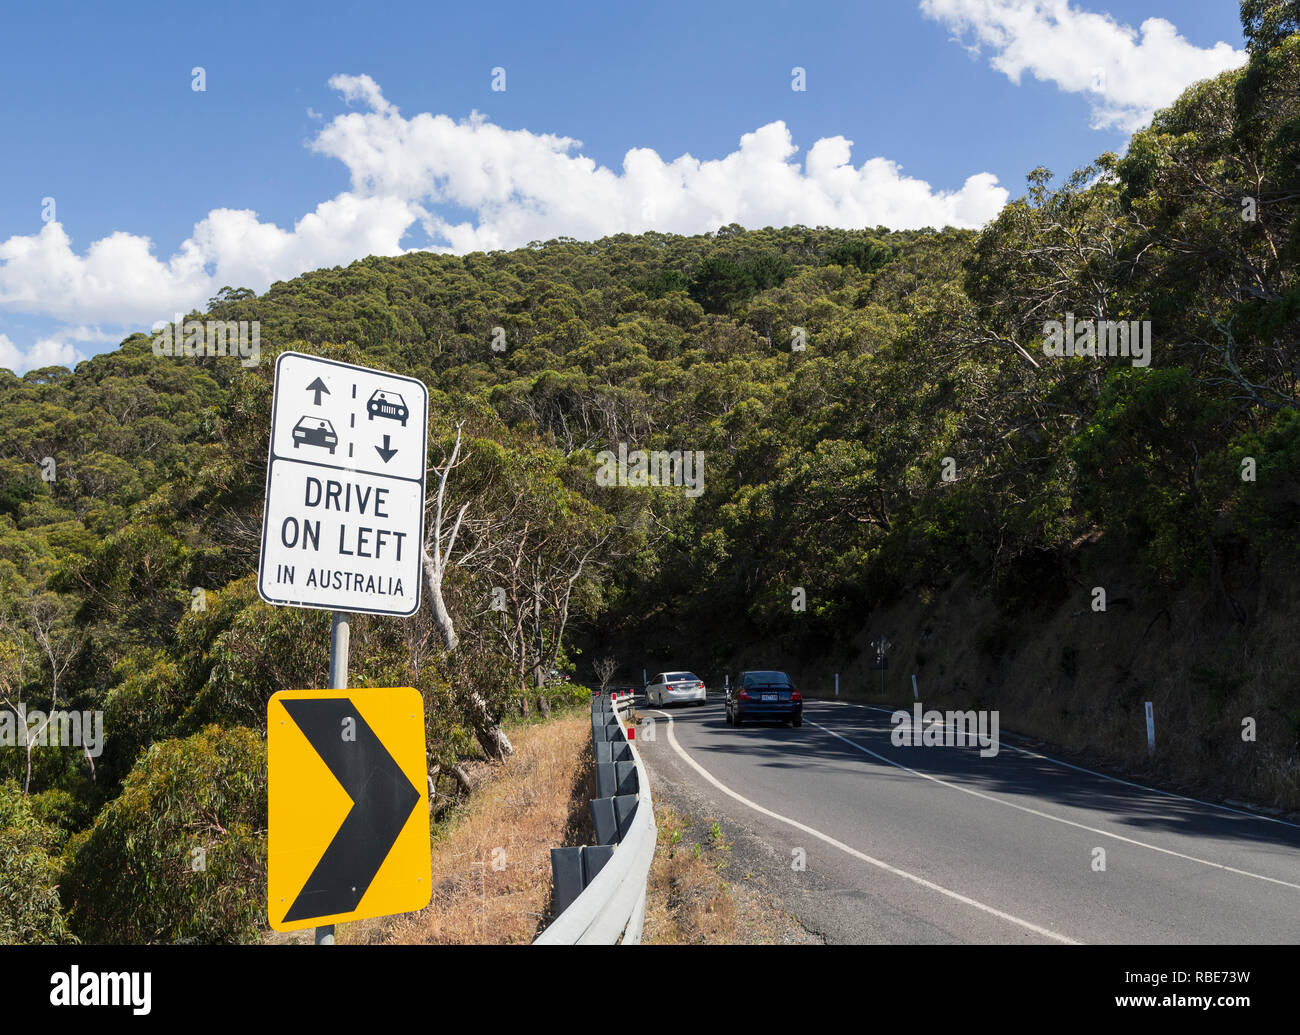 Avertissement aux touristes étrangers qu'en Australie, on doit rouler sur la gauche. Photographié sur la Great Ocean Road, Victoria, Australie. Banque D'Images